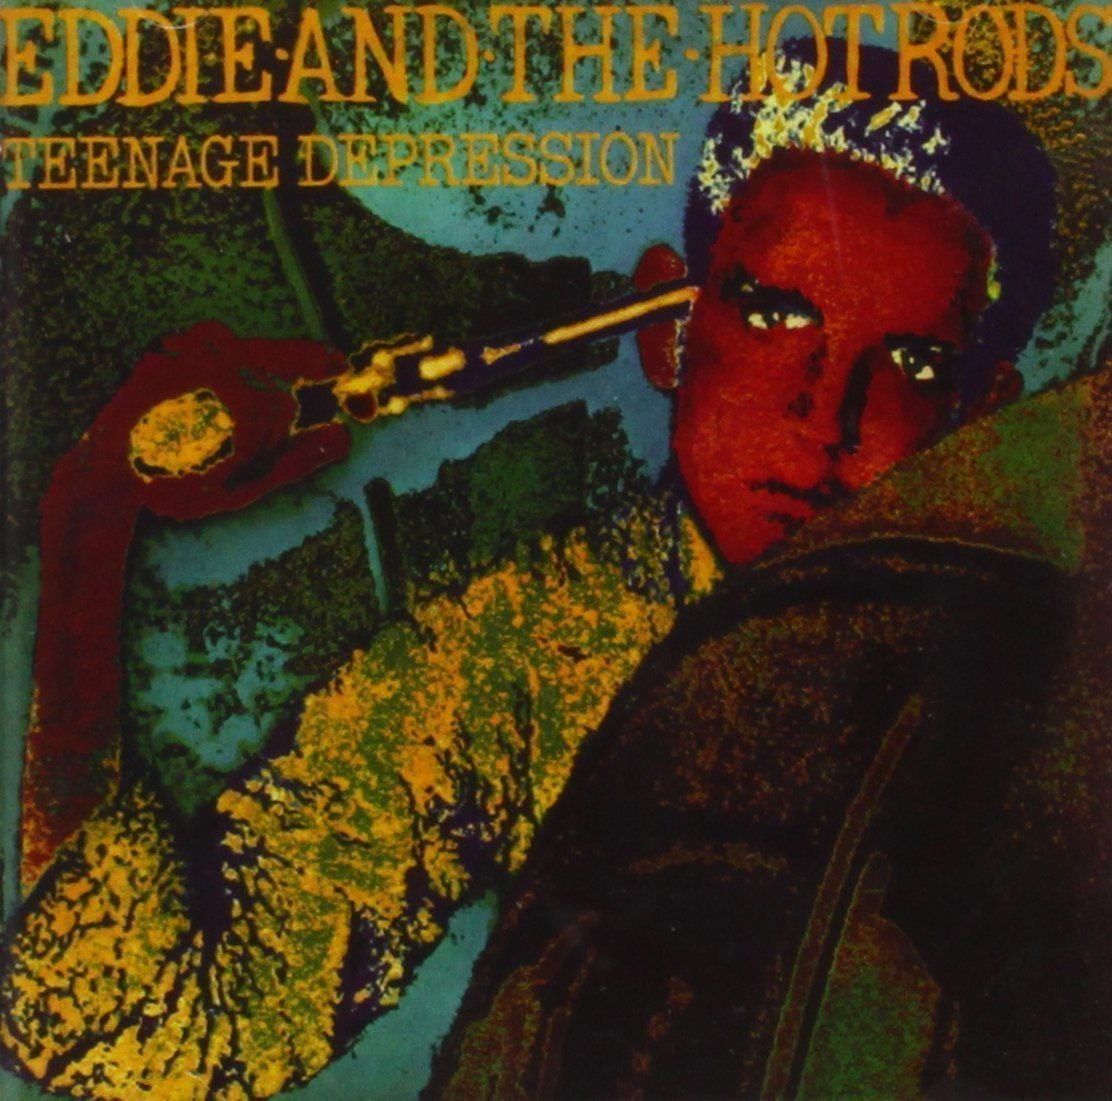 Schallplatte Eddie And The Hot Rods - Teenage Depression (LP)